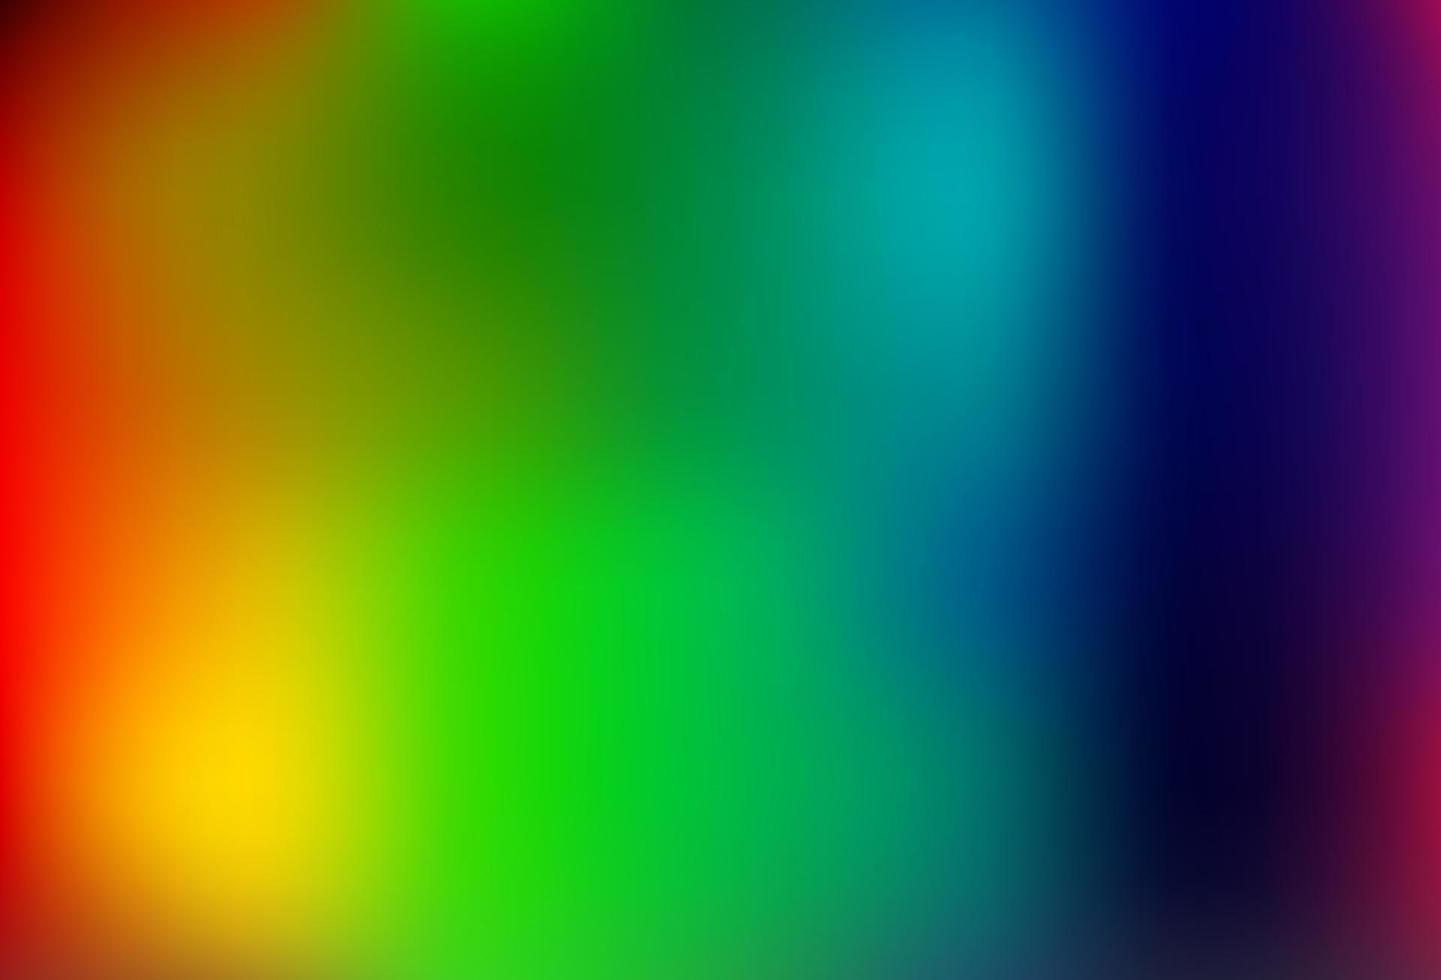 sfondo astratto di vettore multicolore chiaro, arcobaleno.